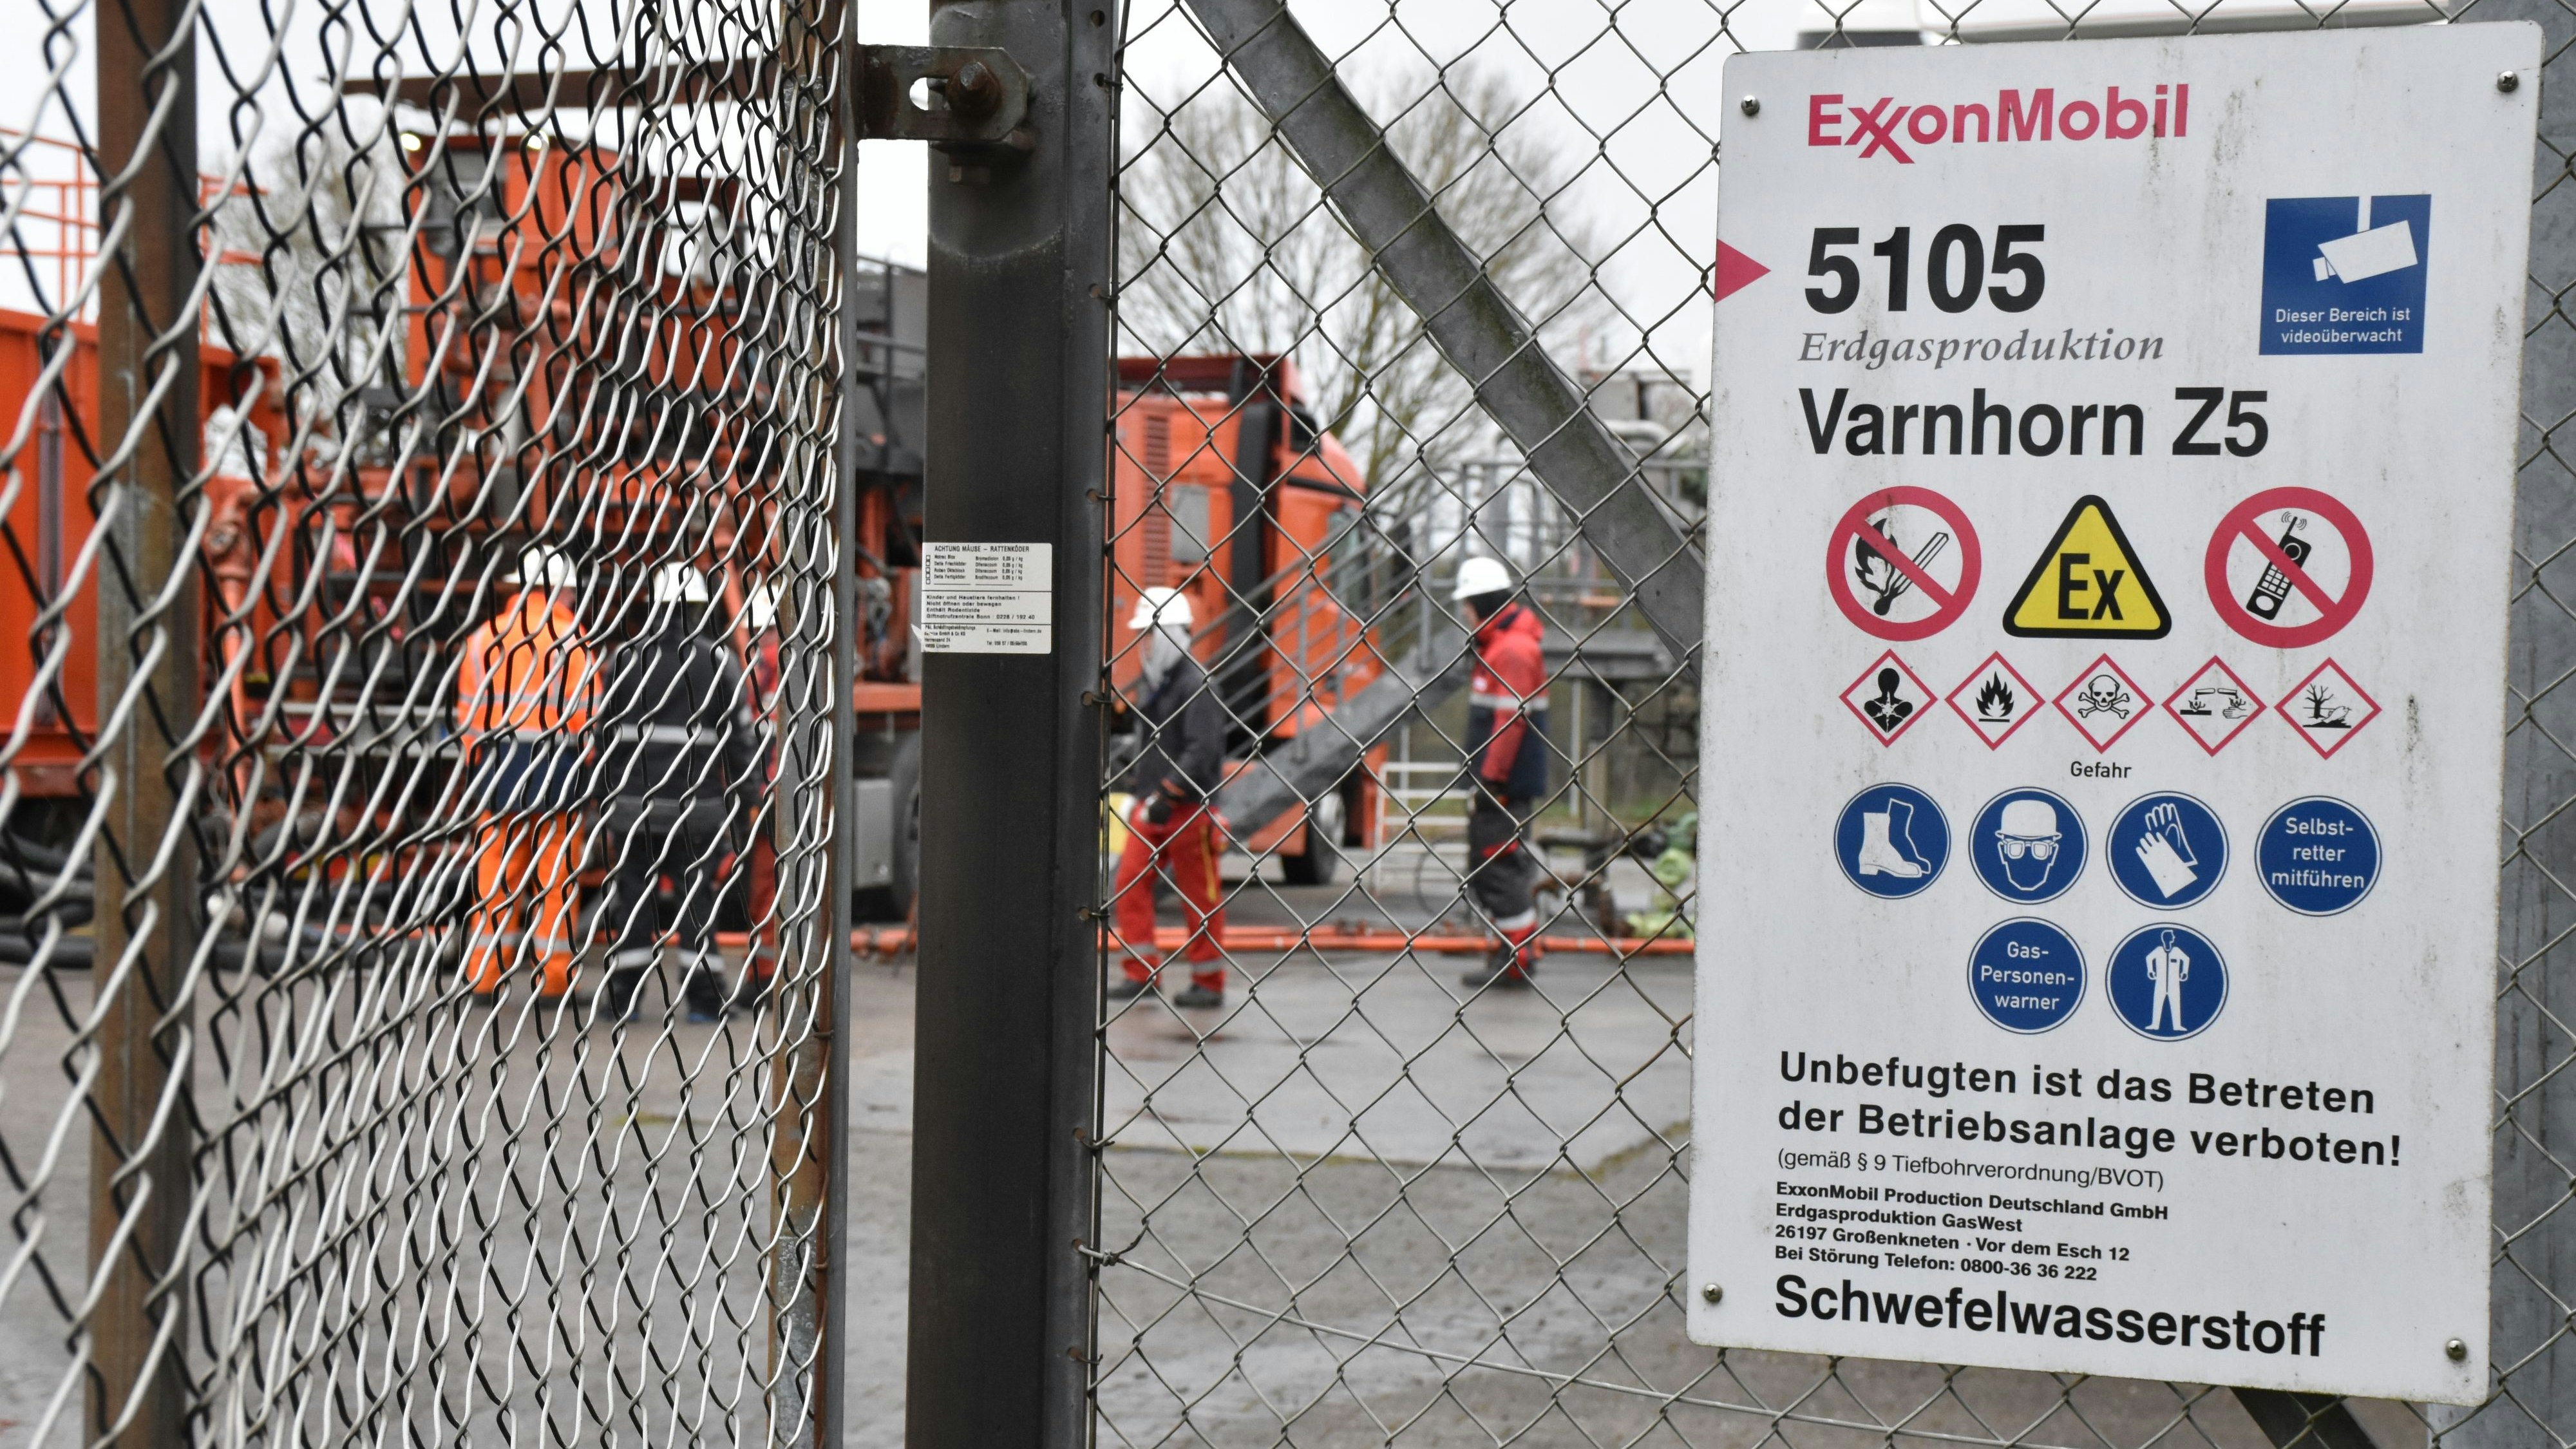 Nach 42 Jahren legt ExxonMobil die Produktion an der Bohrstelle Varnhorn Z5 (Bild) bei Visbek still. Generell will das Unternehmen aber künftig wieder mehr fossilen Brennstoff fördern. Foto: Berg